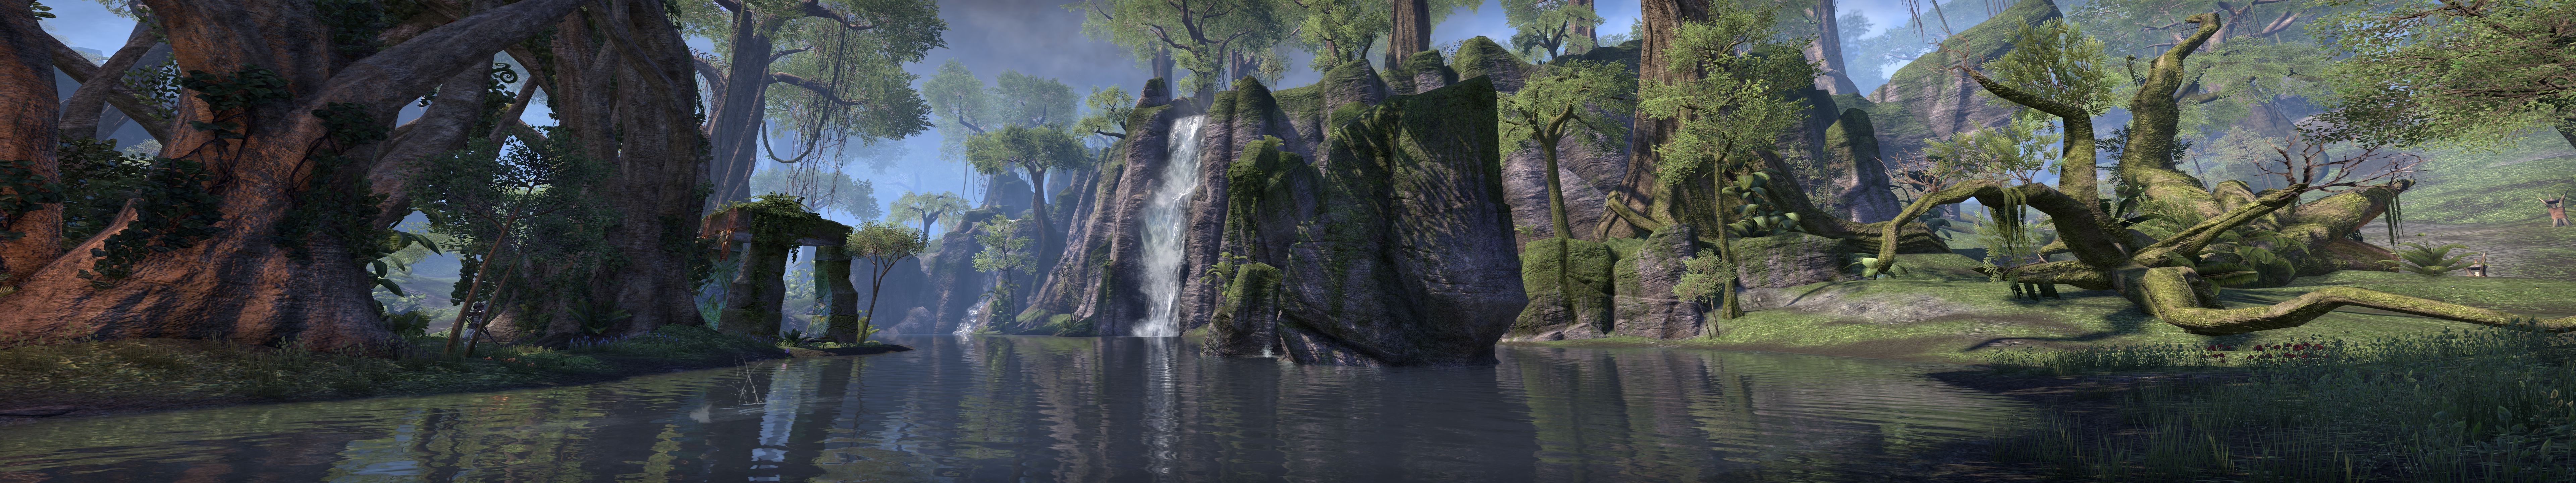 The Elder Scrolls Online, Quadruple Monitors, Water, Forest, Lake, Ruin Wallpaper